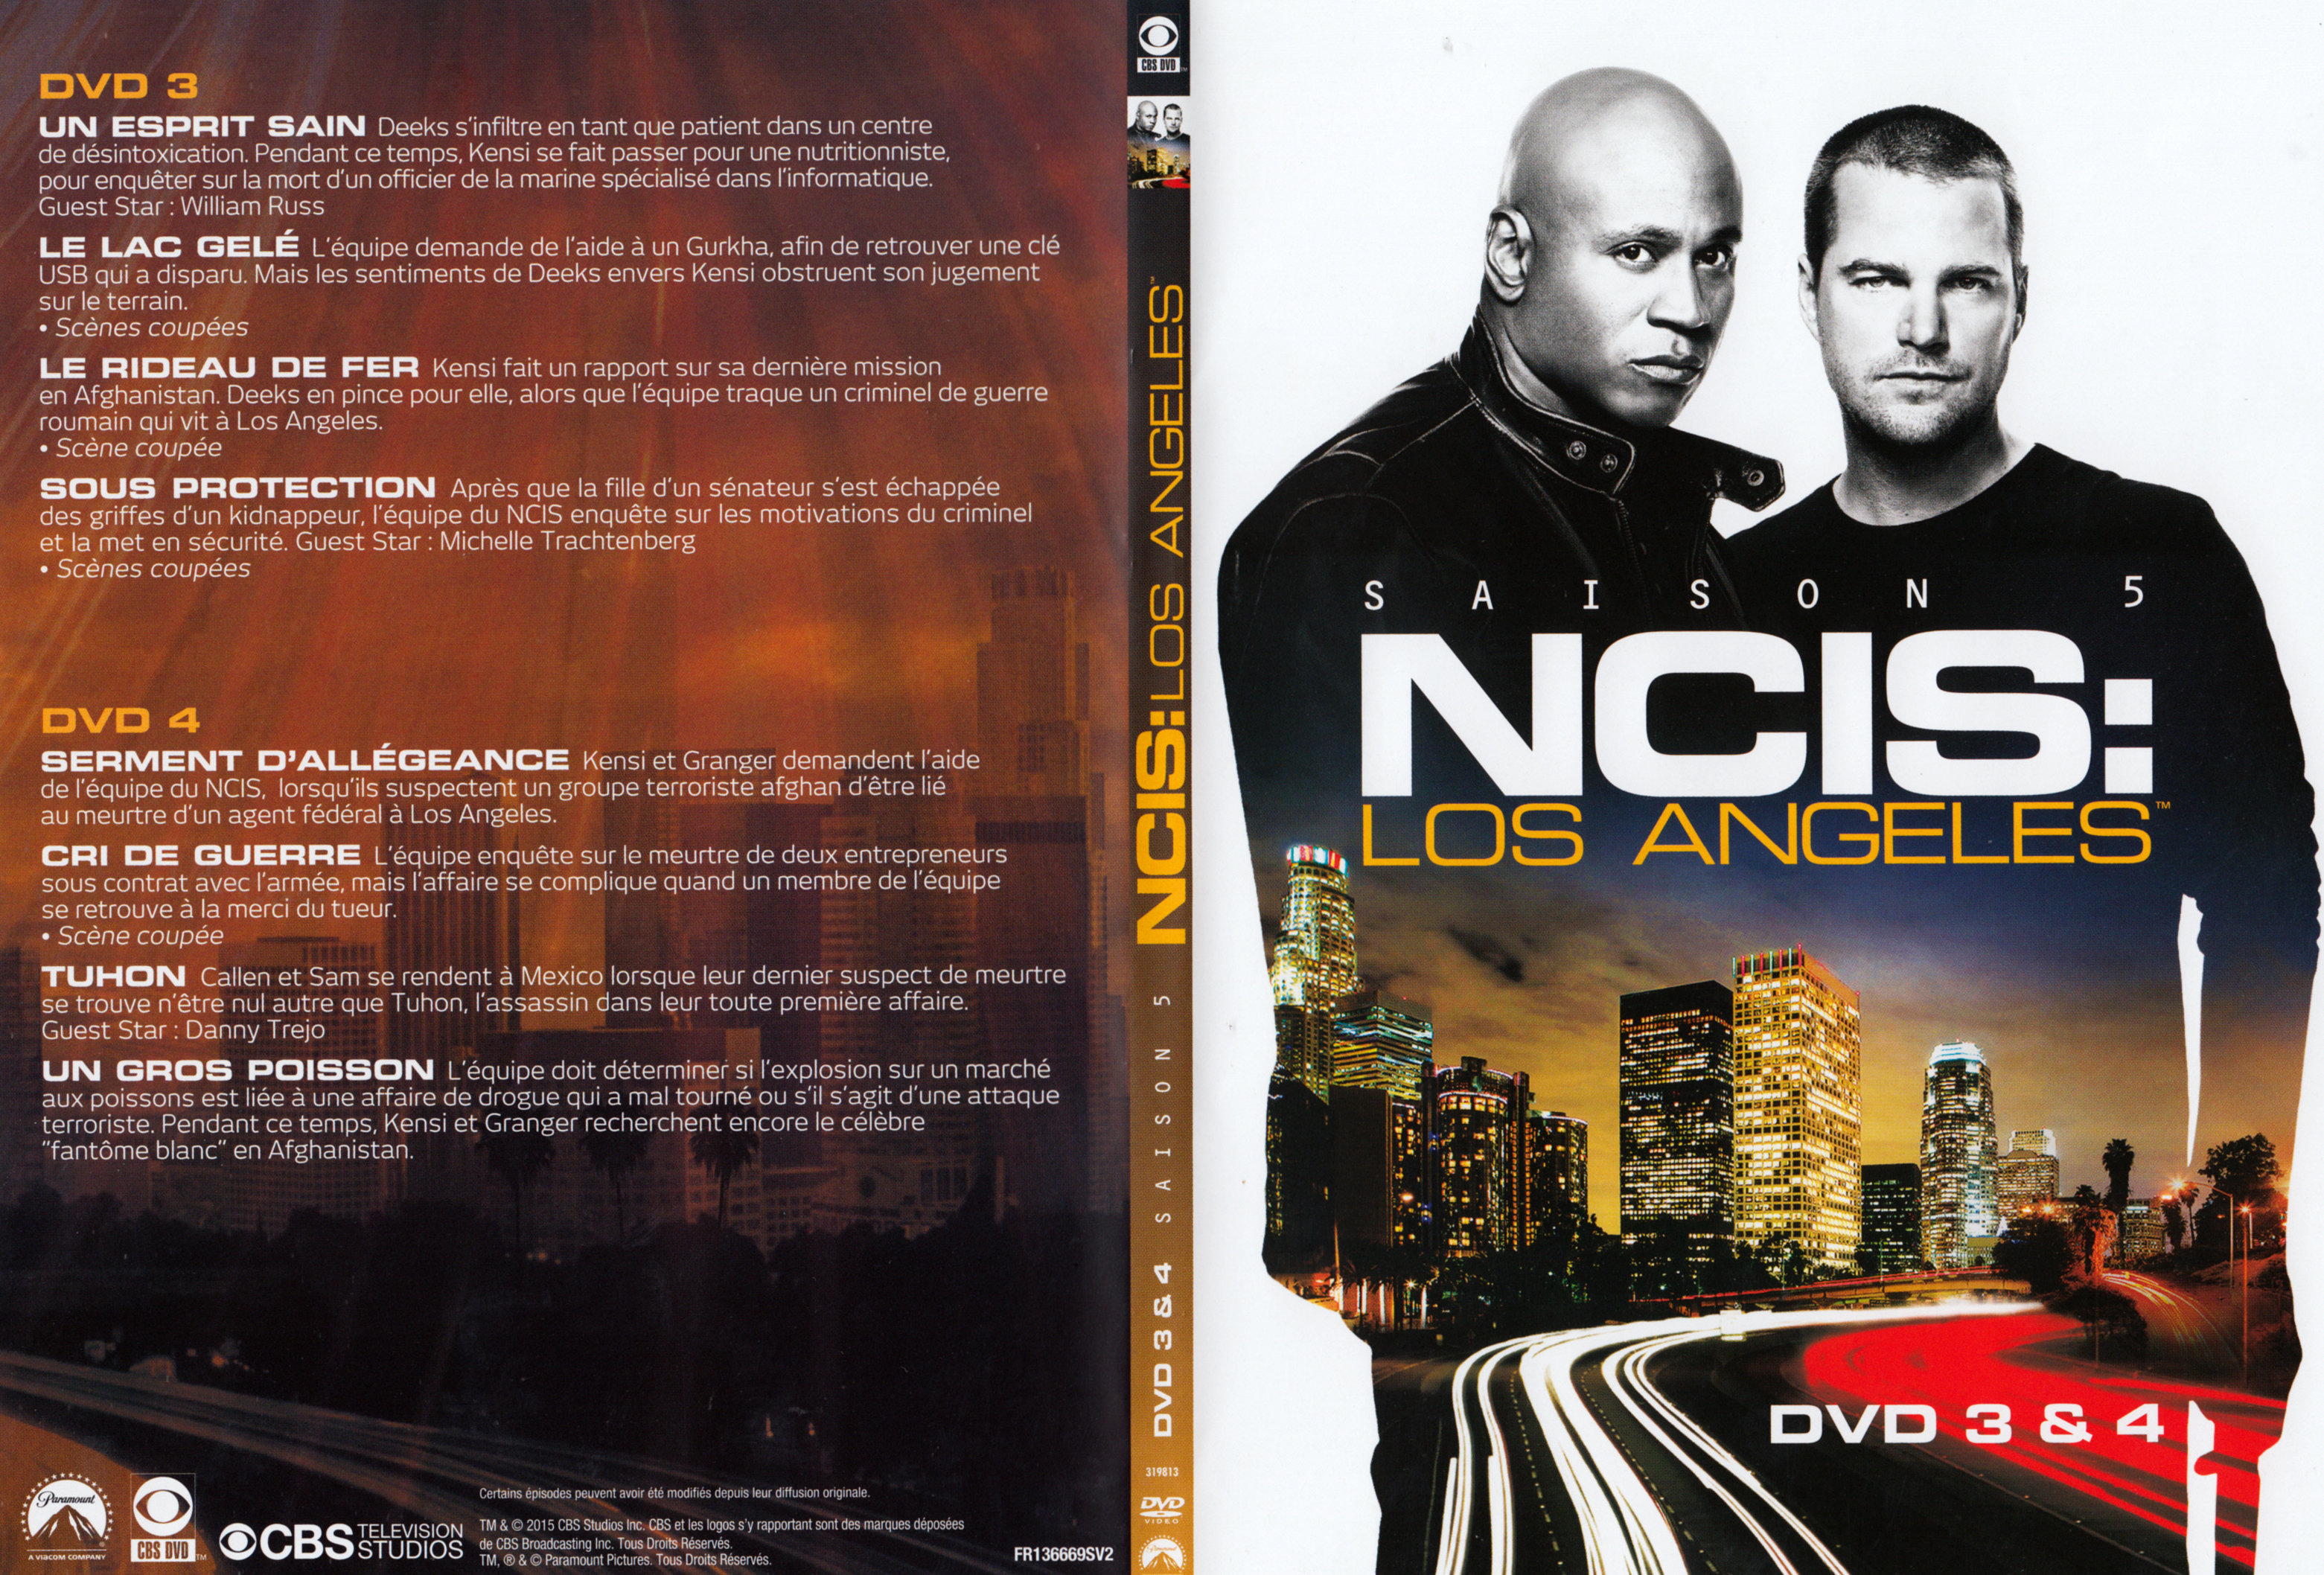 Jaquette DVD NCIS Los Angeles Saison 5 DVD 2